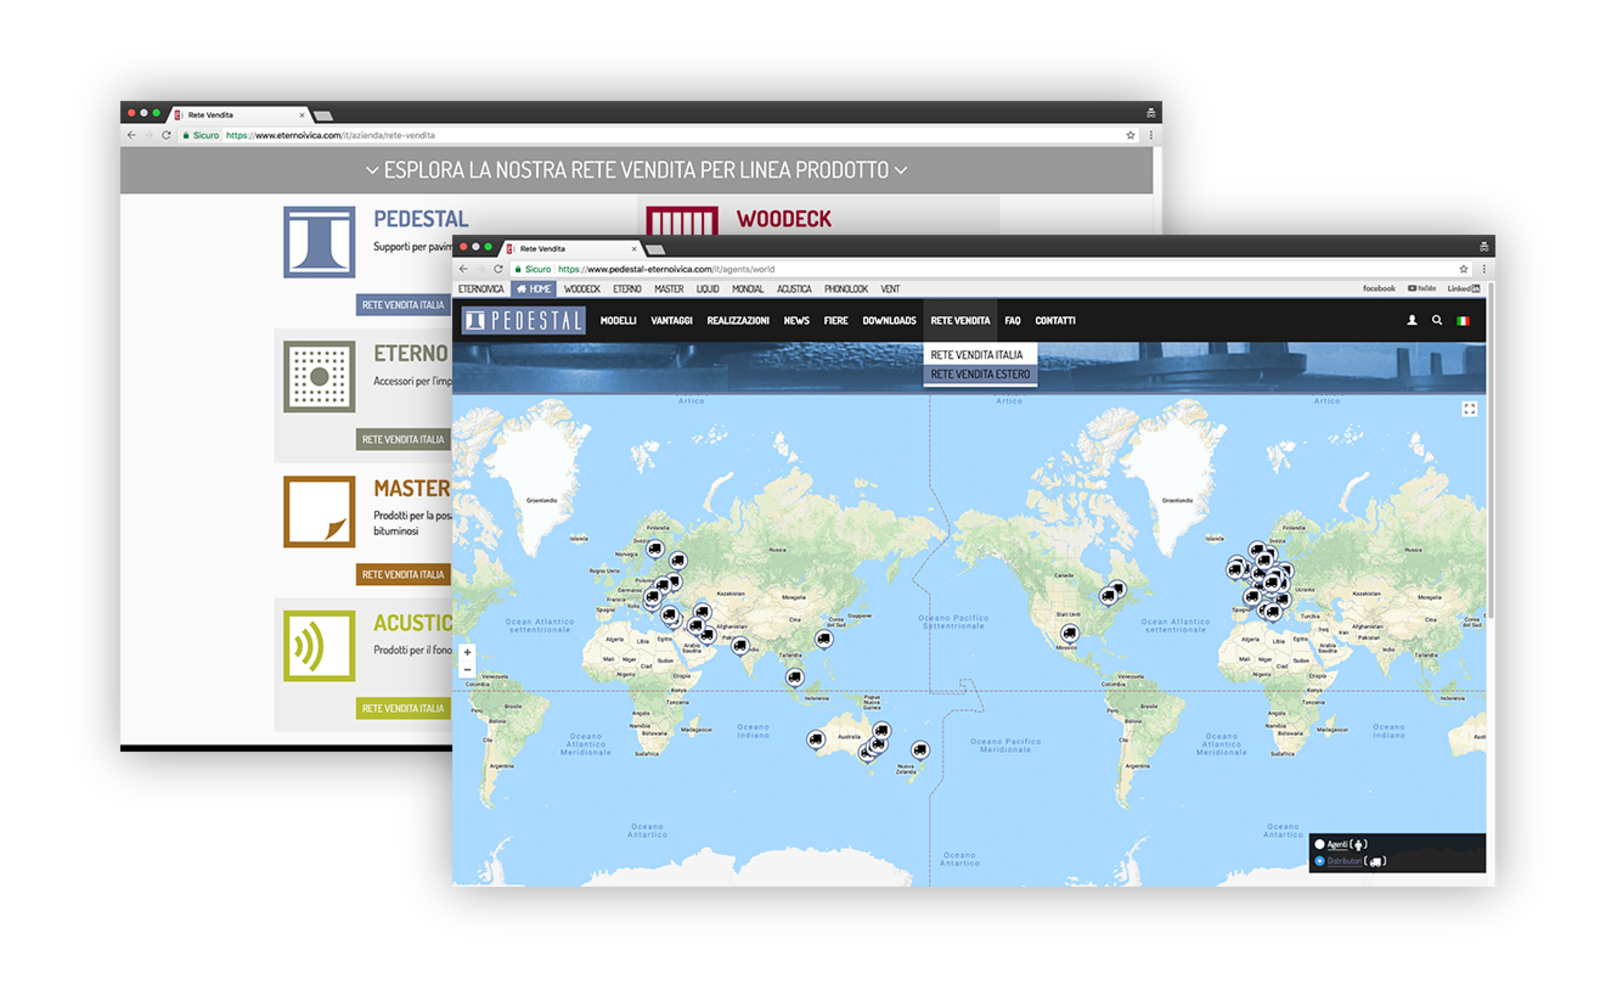 Mappa del mondo nel sito Eterno Ivica che mostra la locazione dei vari agenti dell'azienda 